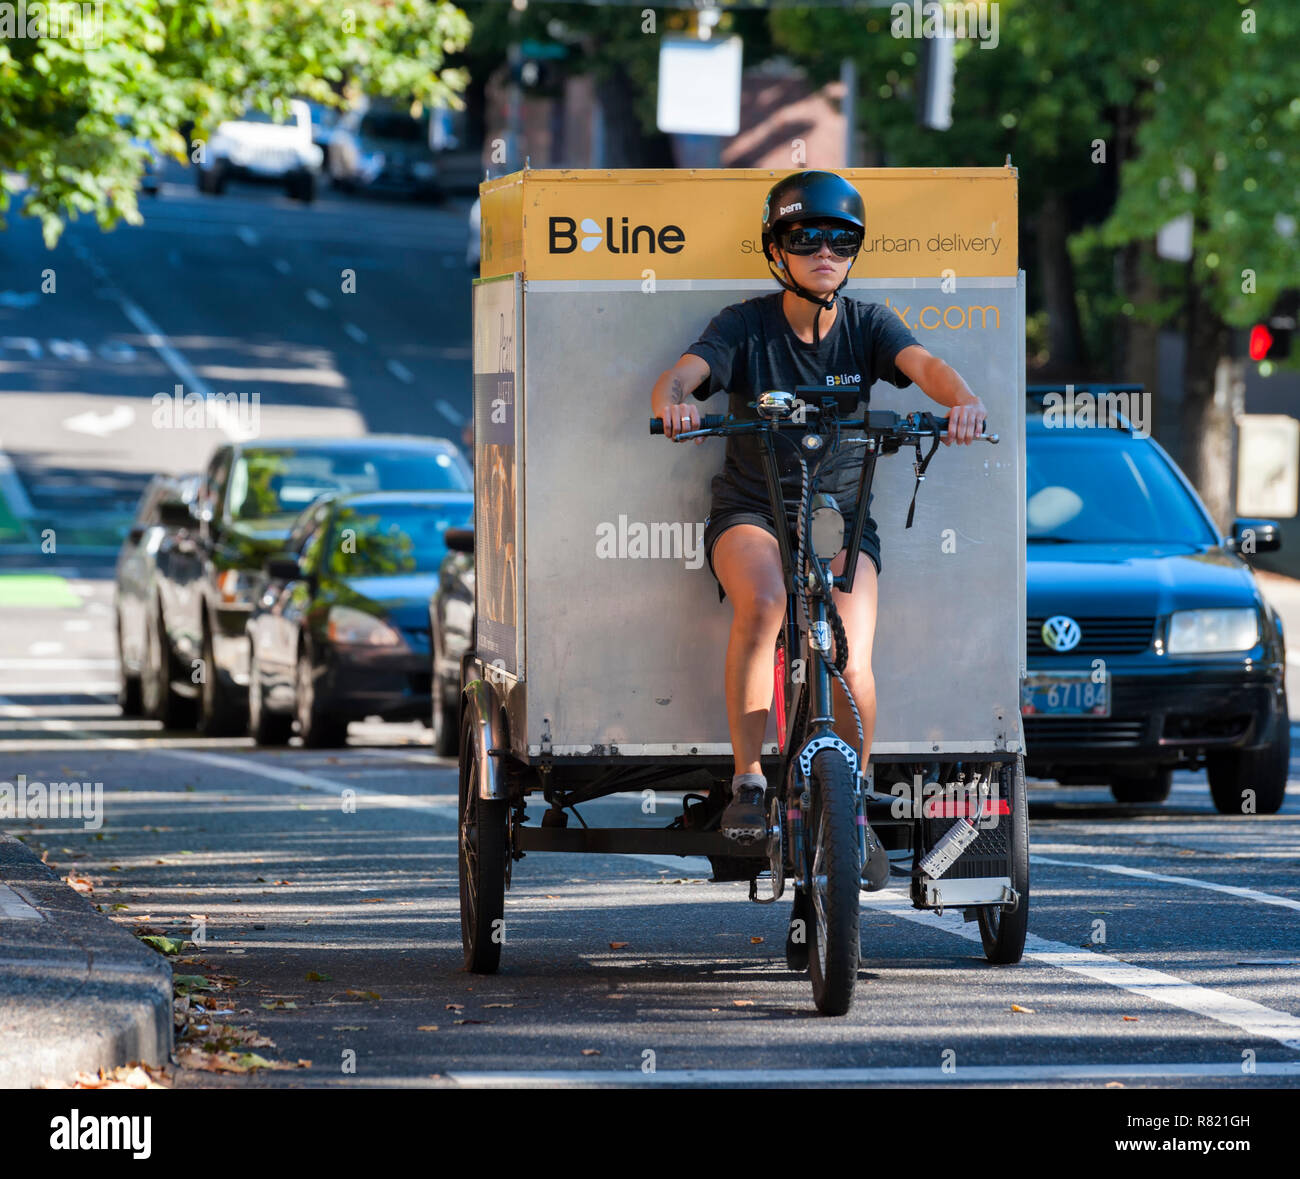 Portland, Oregon, USA - Septiembre 20, 2014: línea B de trabajador ofrece peddle power a Portland, Oregon, urbano eco-delivery negocio en las calles de d Foto de stock